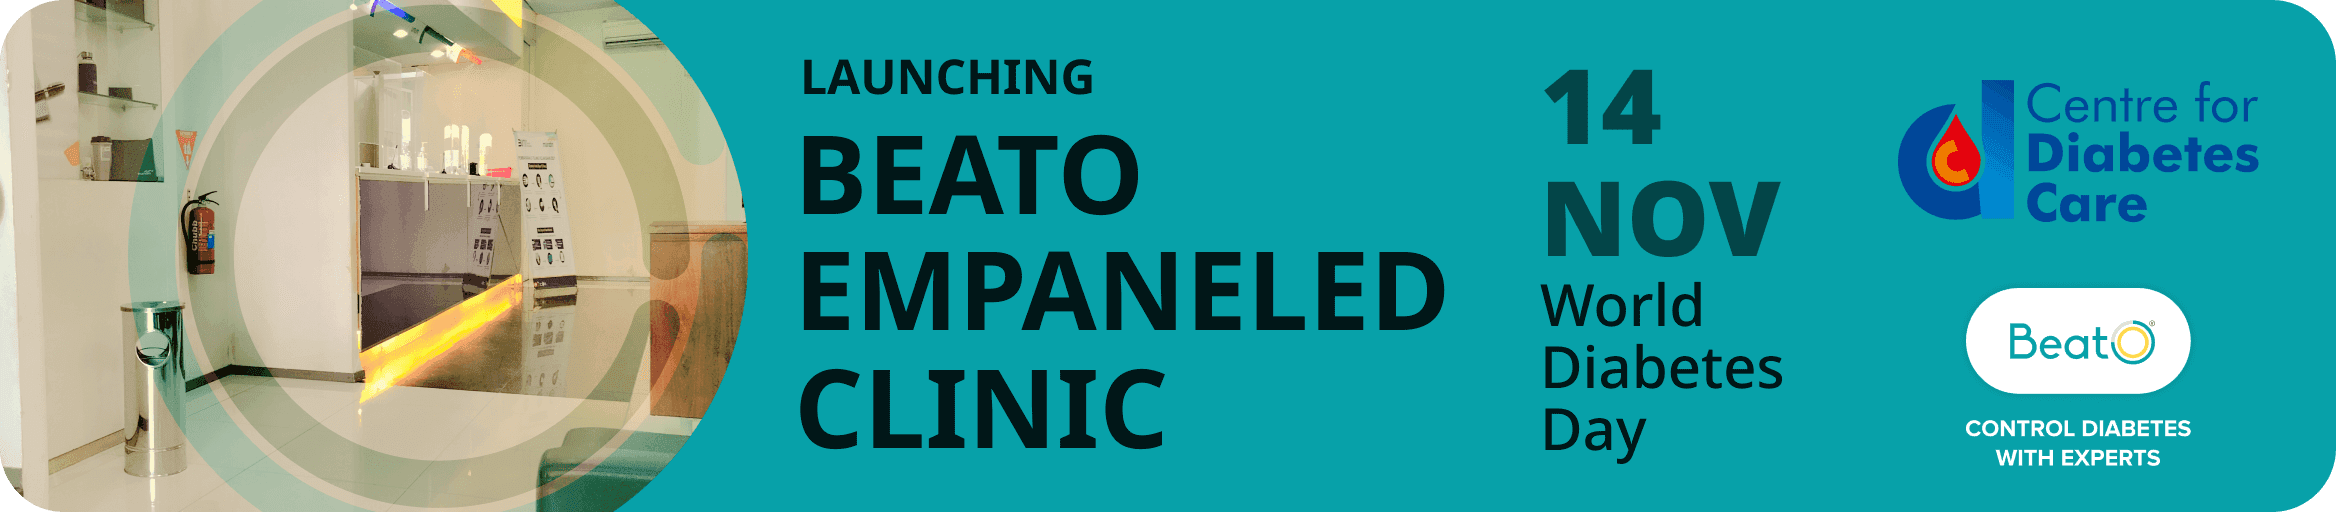 BeatO Empaneled Clinic